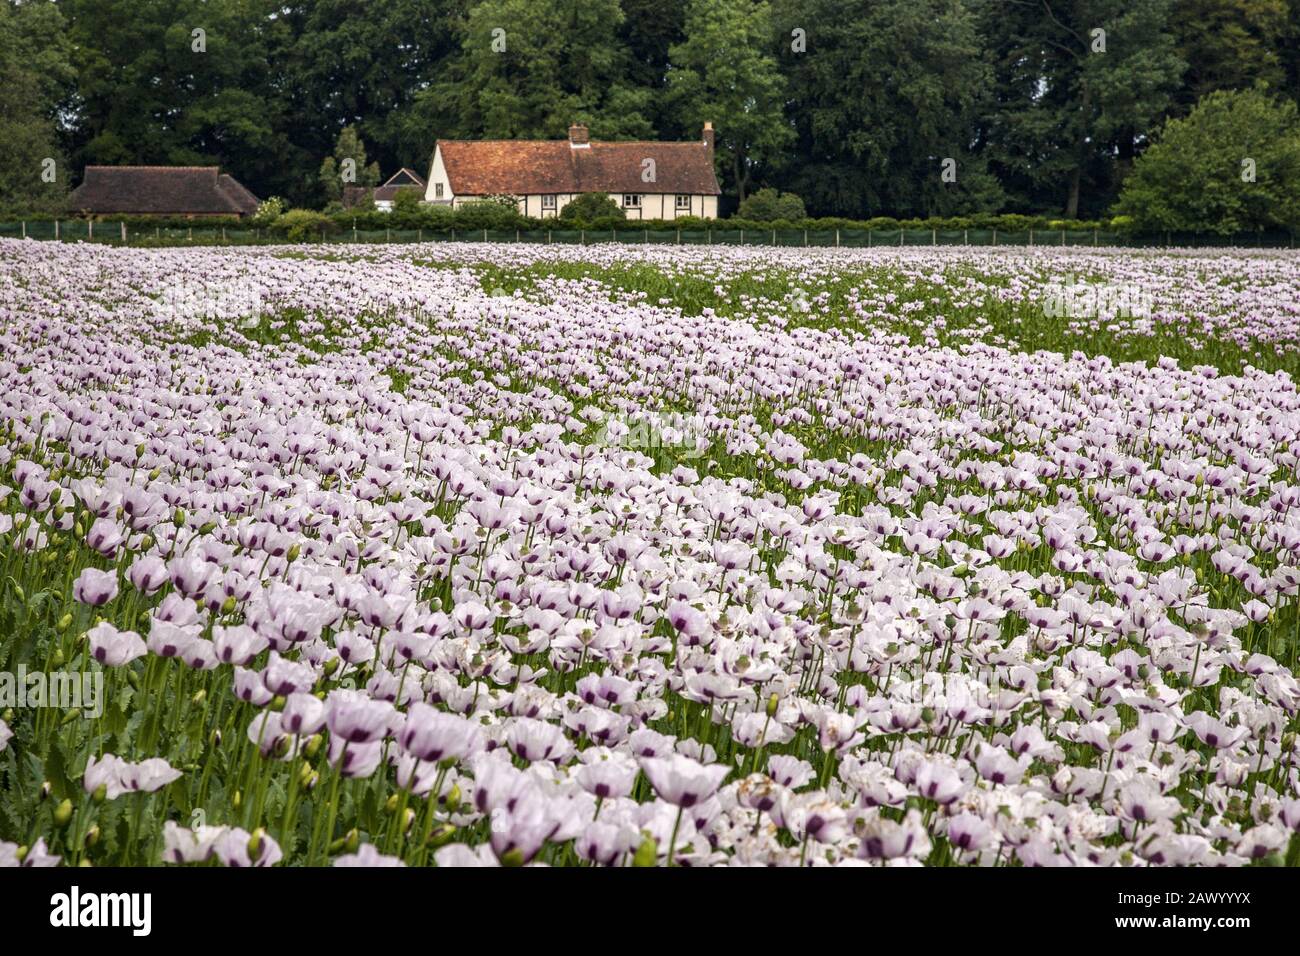 Schönes Feld von rosa Mohnblumen Oxfordshire, Großbritannien und ein Bauernhaus im Hintergrund Stockfoto